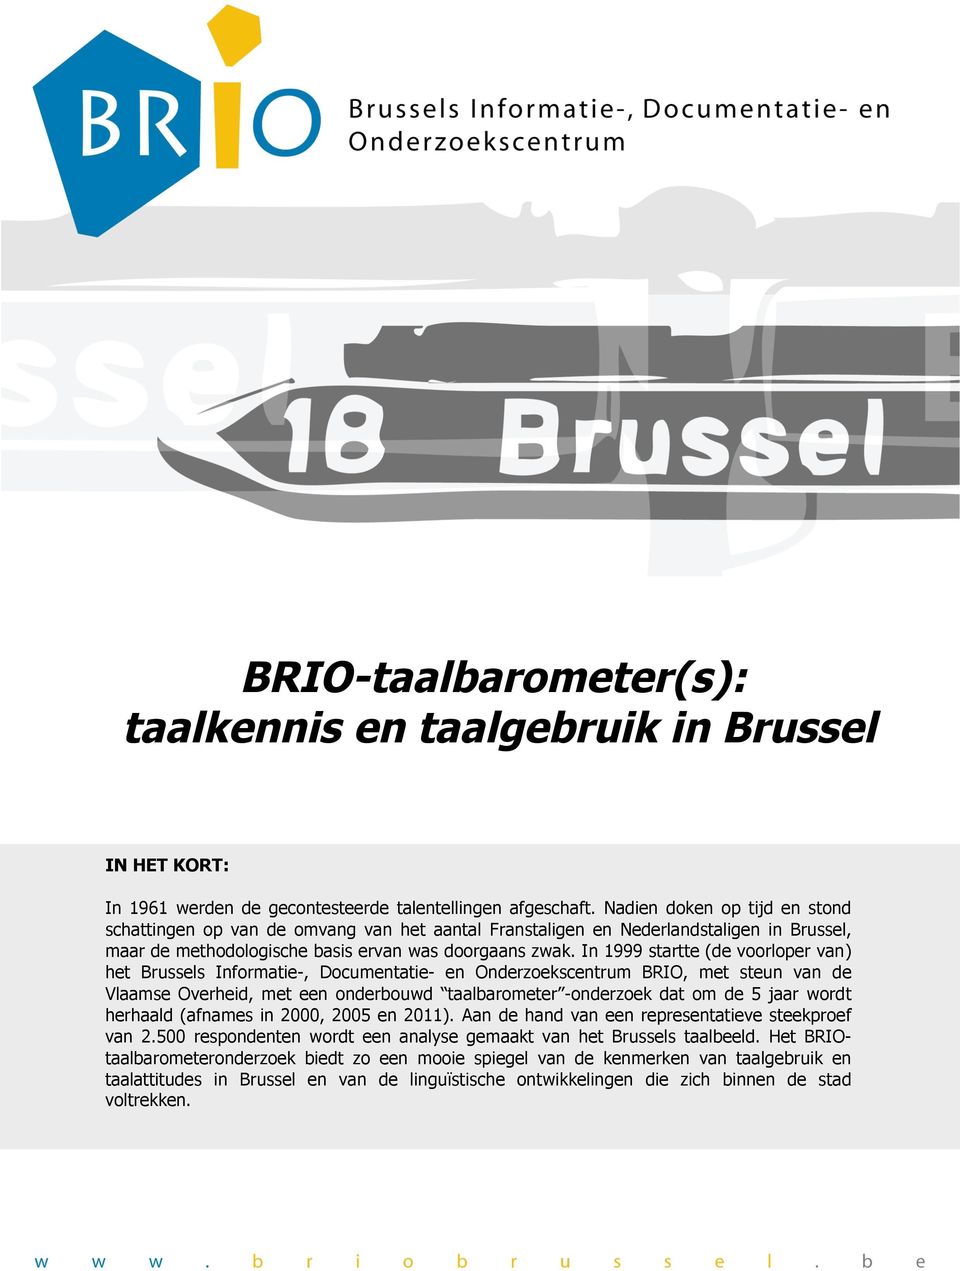 In 1999 startte (de voorloper van) het Brussels Informatie-, Documentatie- en Onderzoekscentrum BRIO, met steun van de Vlaamse Overheid, met een onderbouwd taalbarometer -onderzoek dat om de 5 jaar